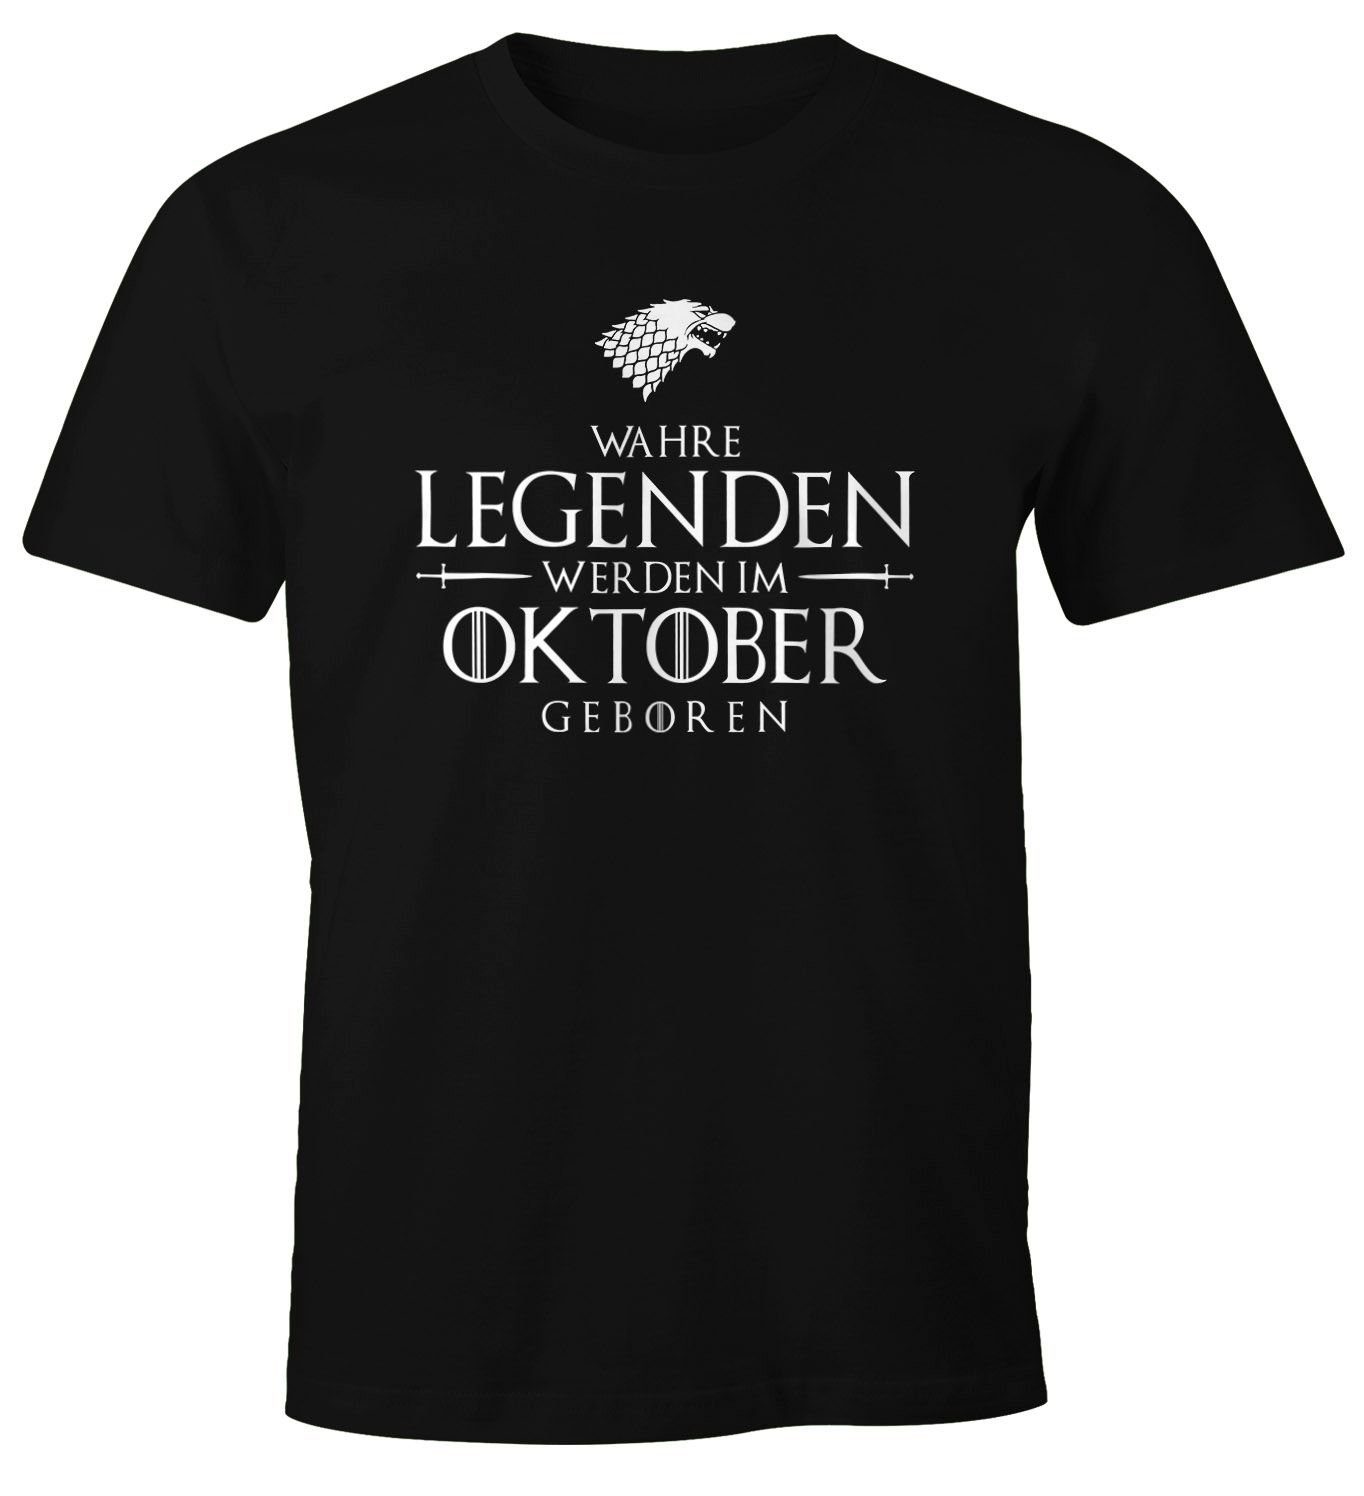 Moonworks® T-Shirt Wahre werden im geboren Print-Shirt Oktober Object] [object schwarz MoonWorks mit Print Fun-Shirt Legenden Herren